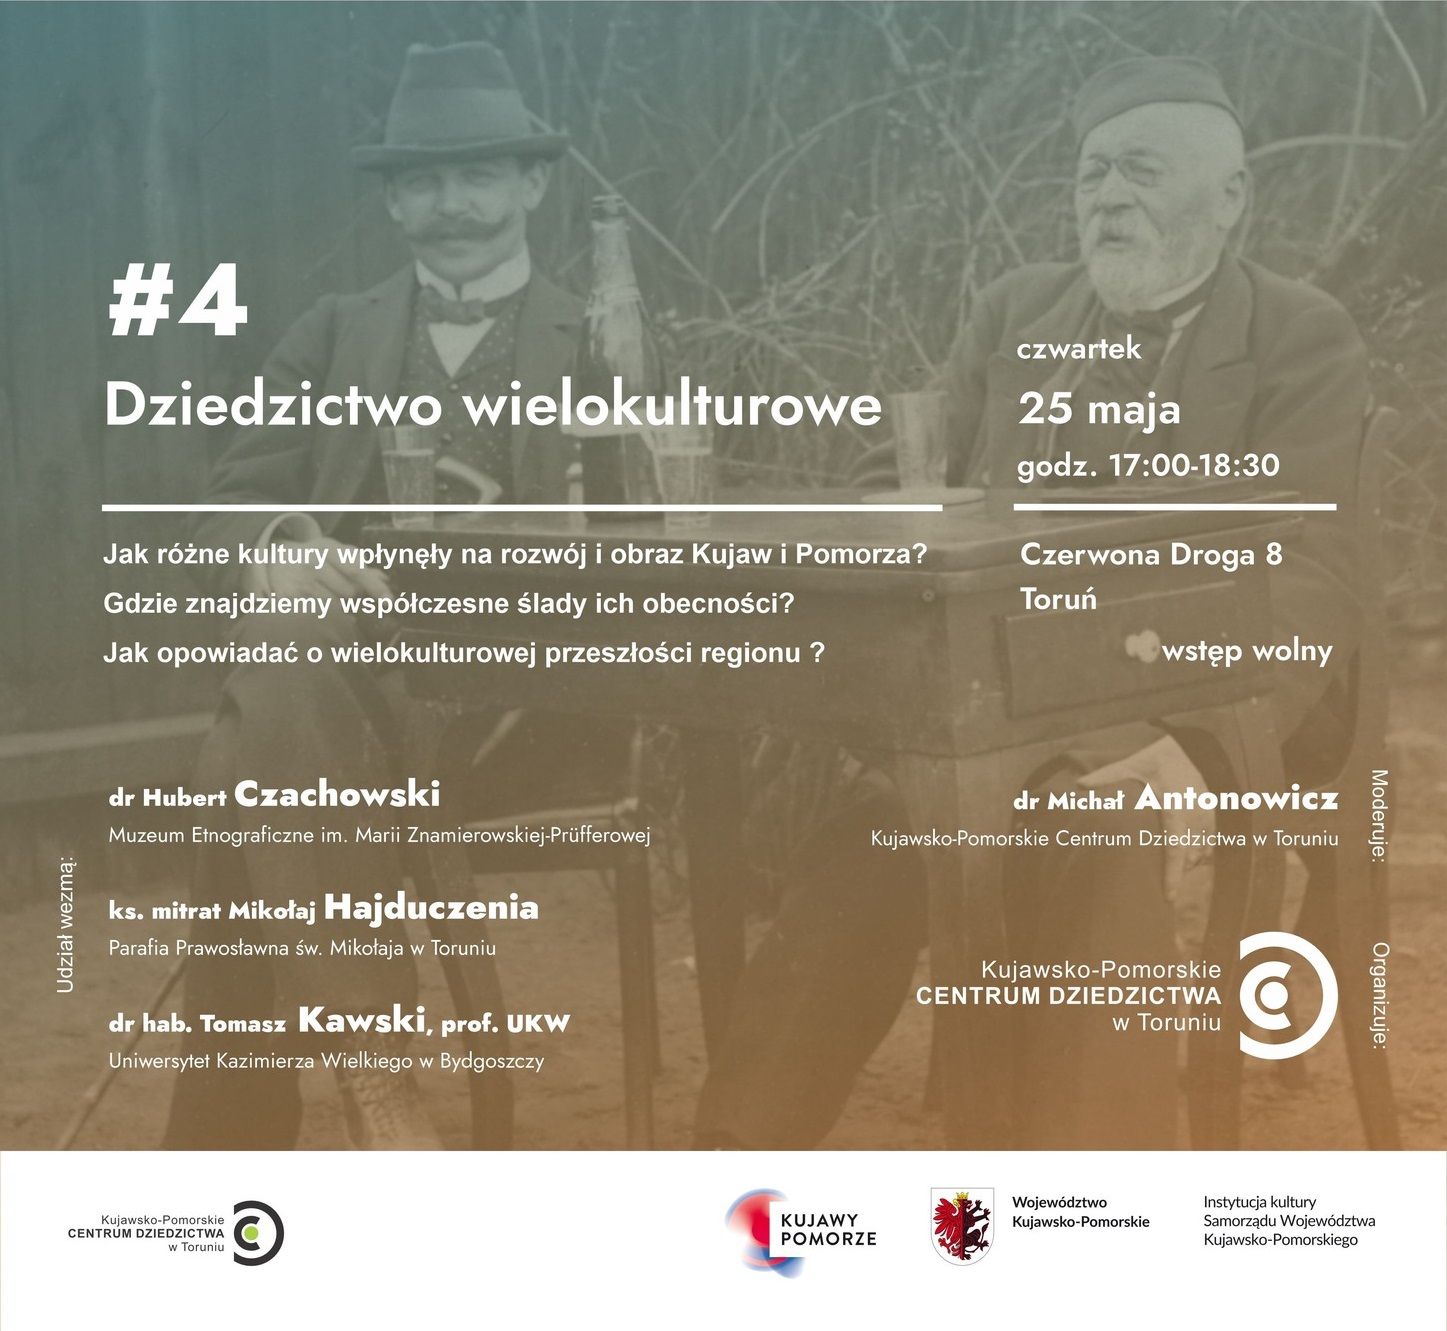 Plakat informacyjny o debacie pt. "Dziedzictwo wielokulturowe".